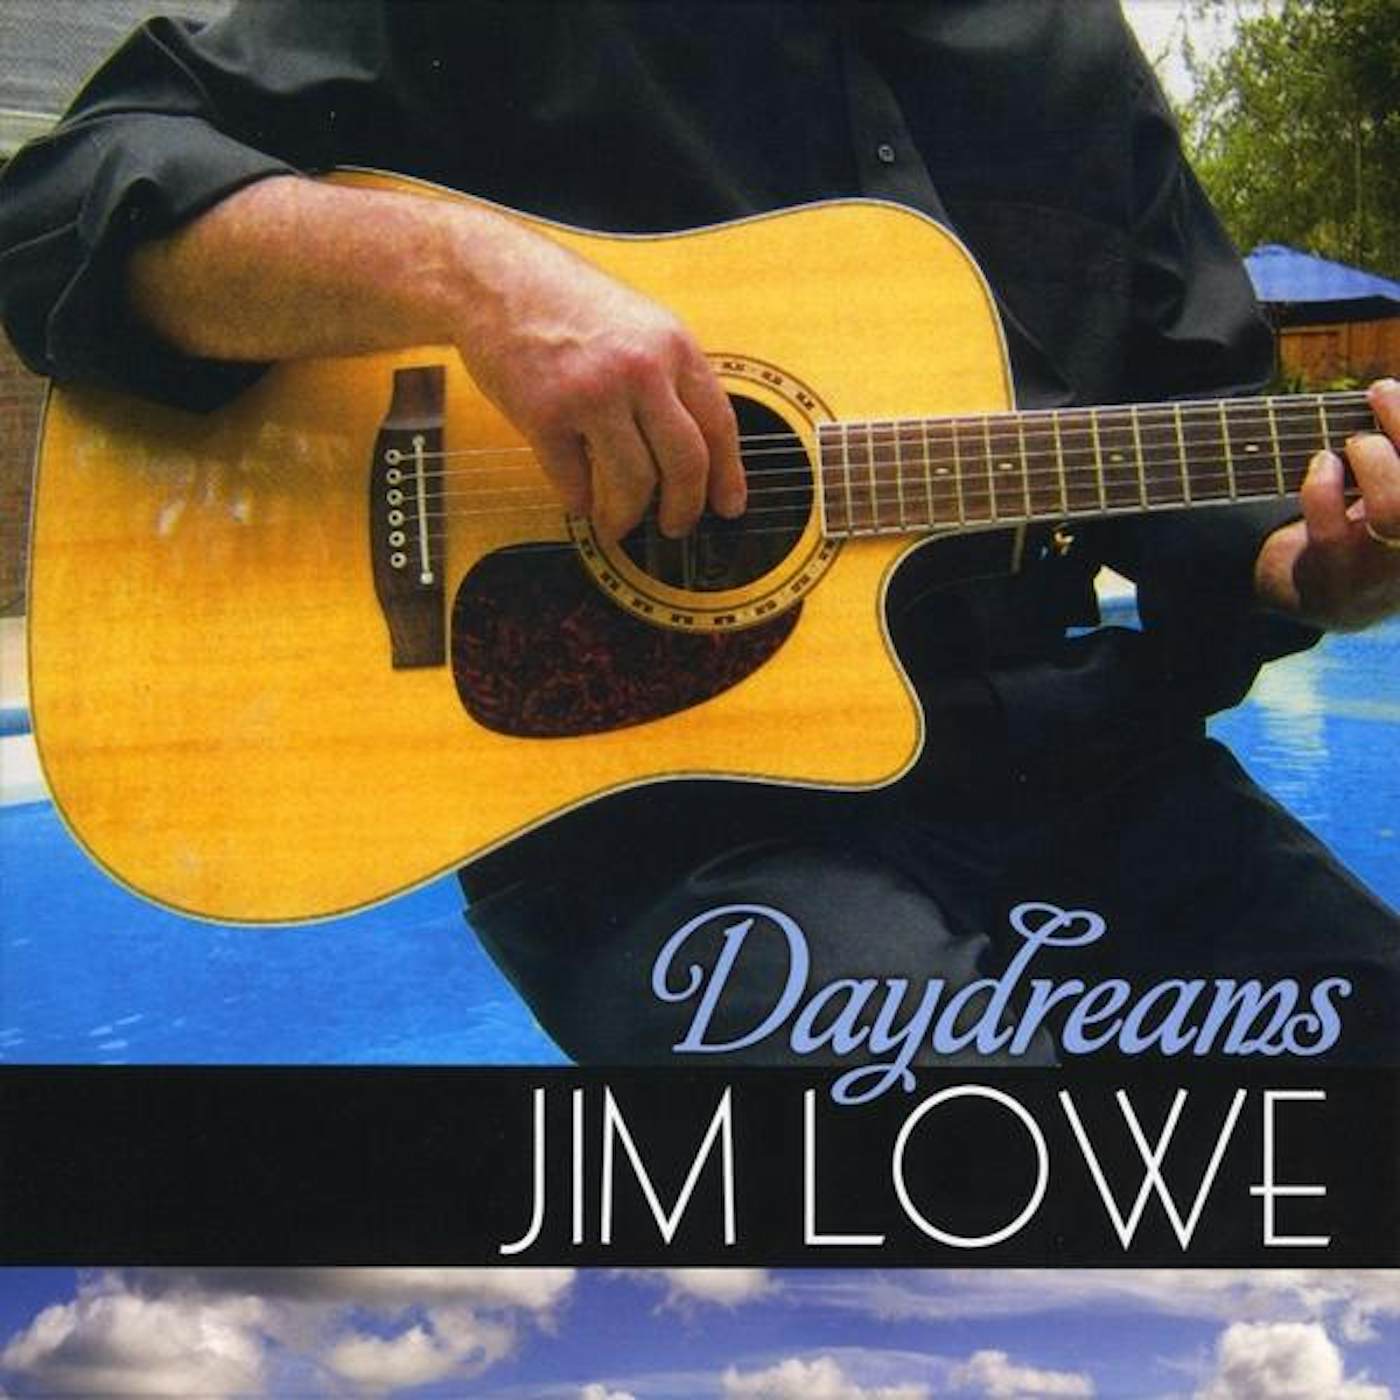 Jim Lowe DAY DREAMS CD